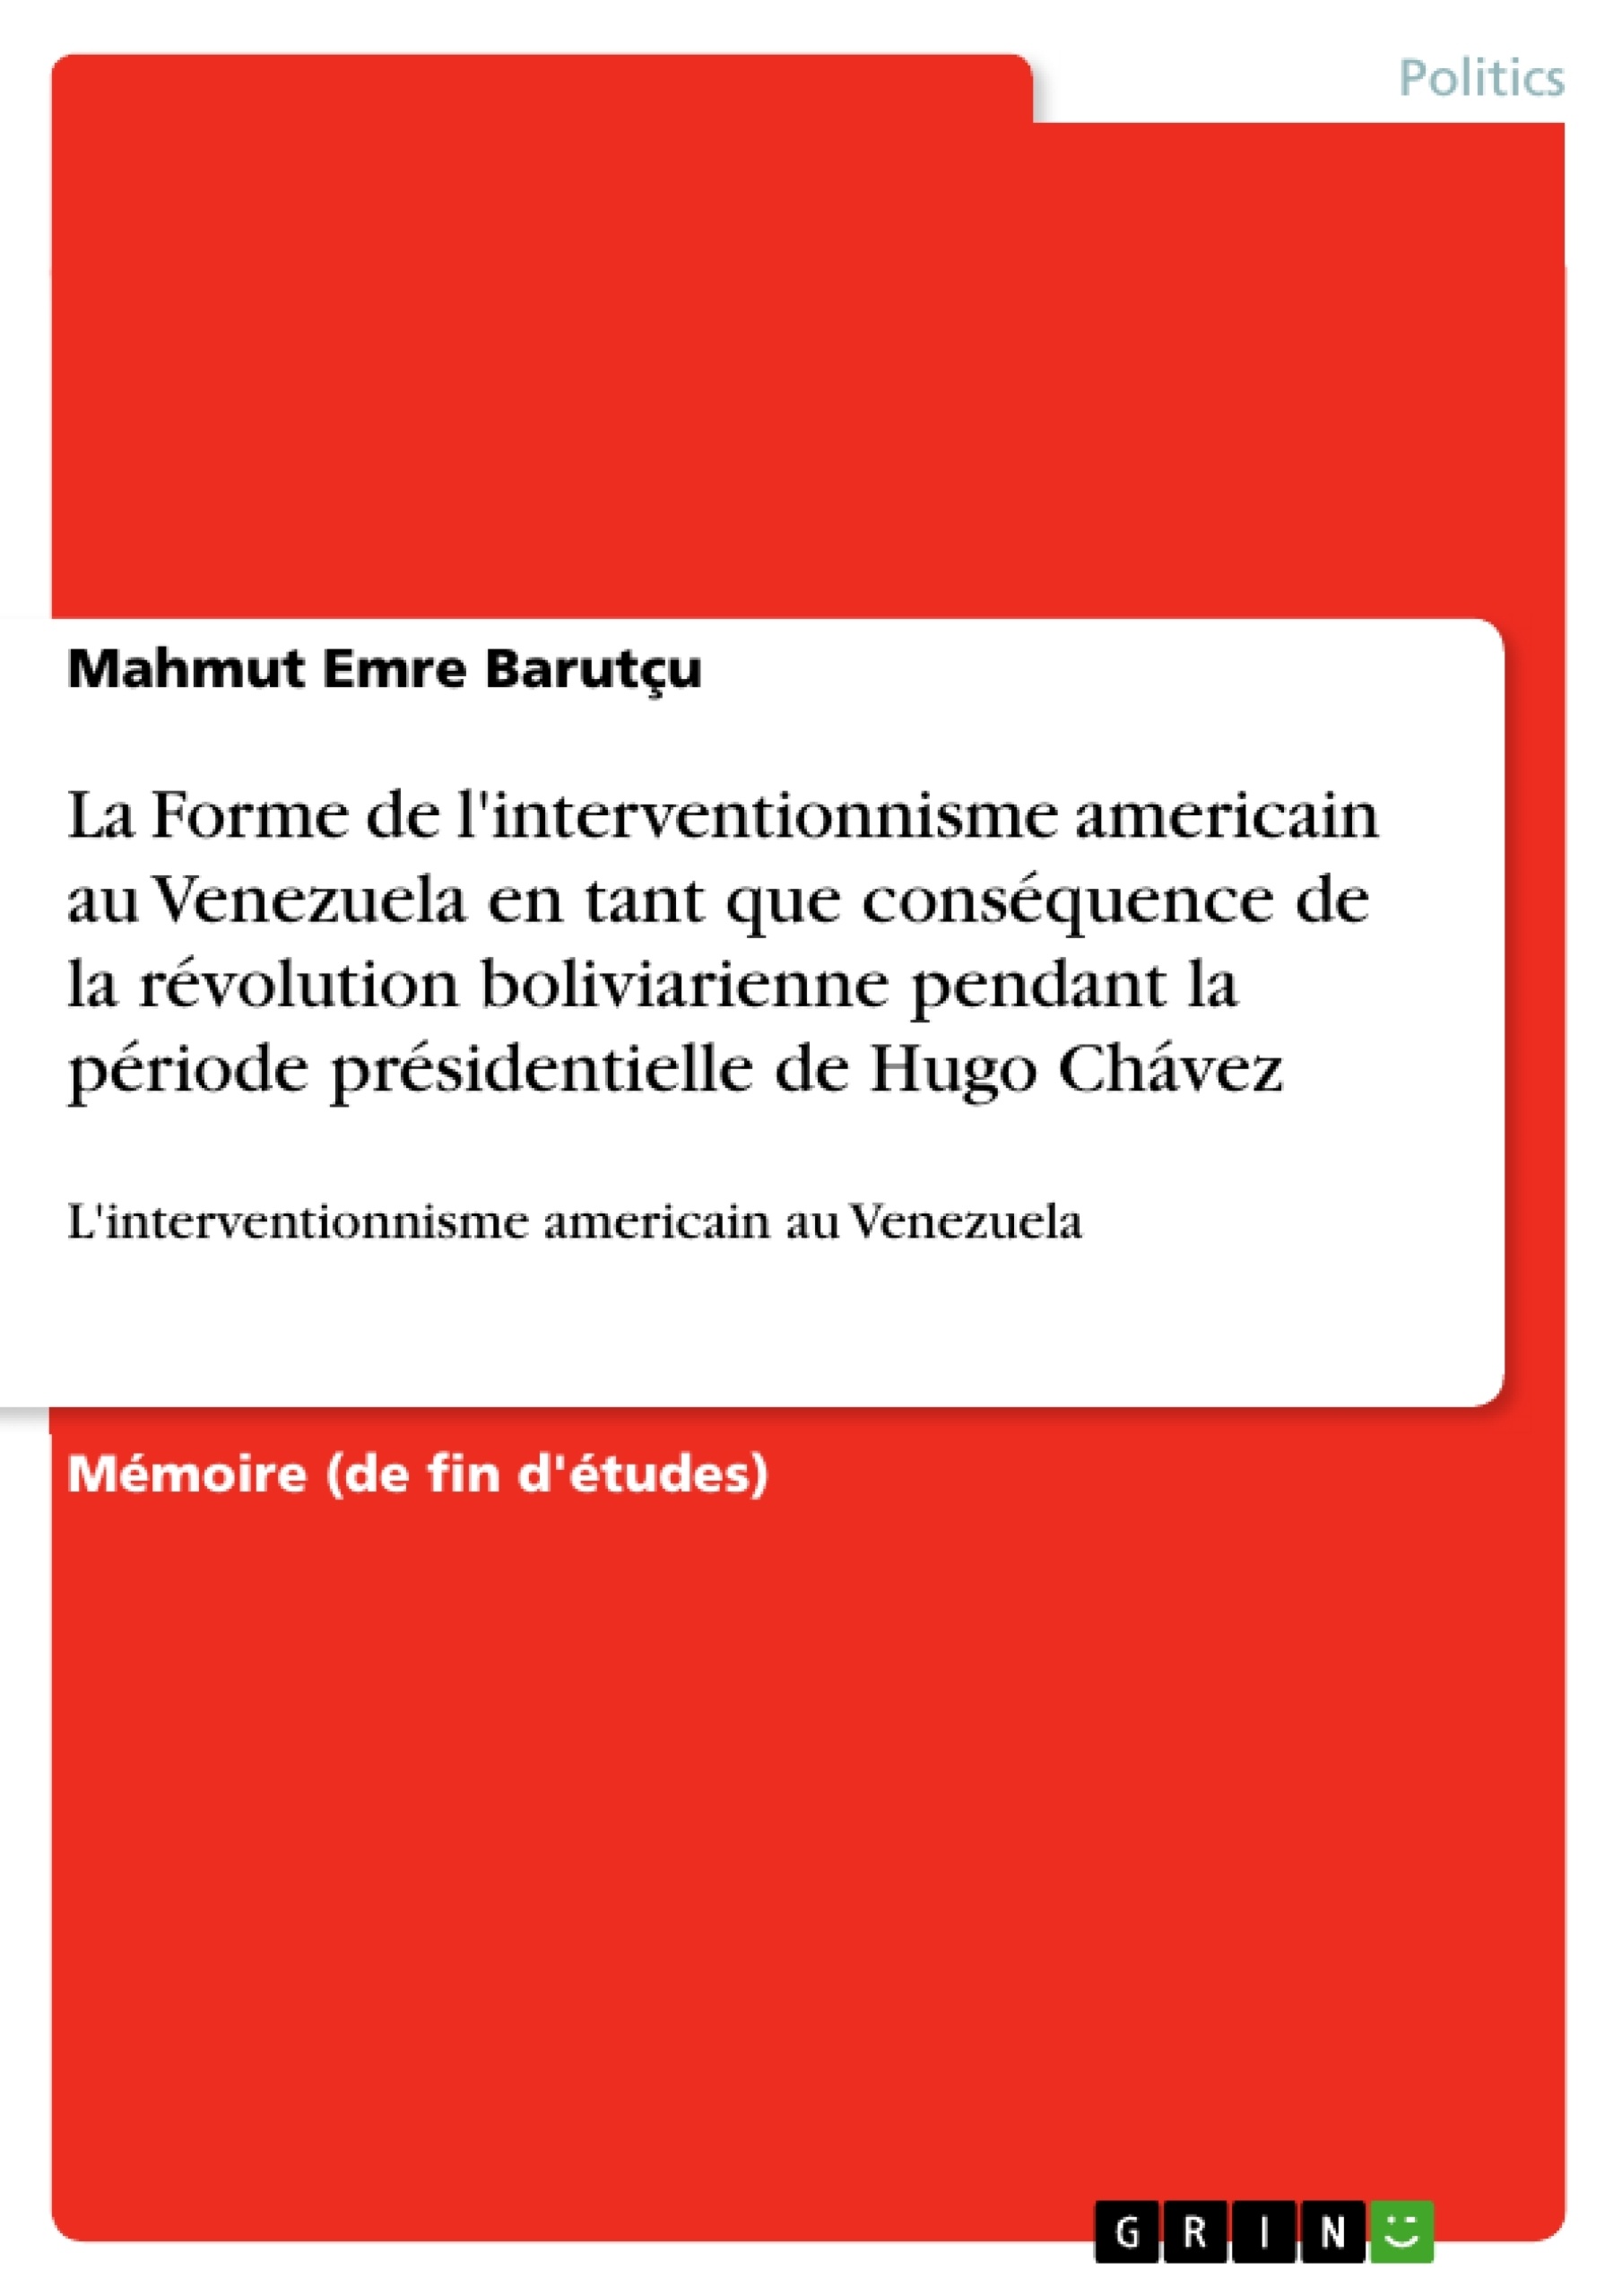 Titre: La Forme de l'interventionnisme americain au Venezuela en tant que conséquence de la révolution boliviarienne pendant la période présidentielle de Hugo Chávez